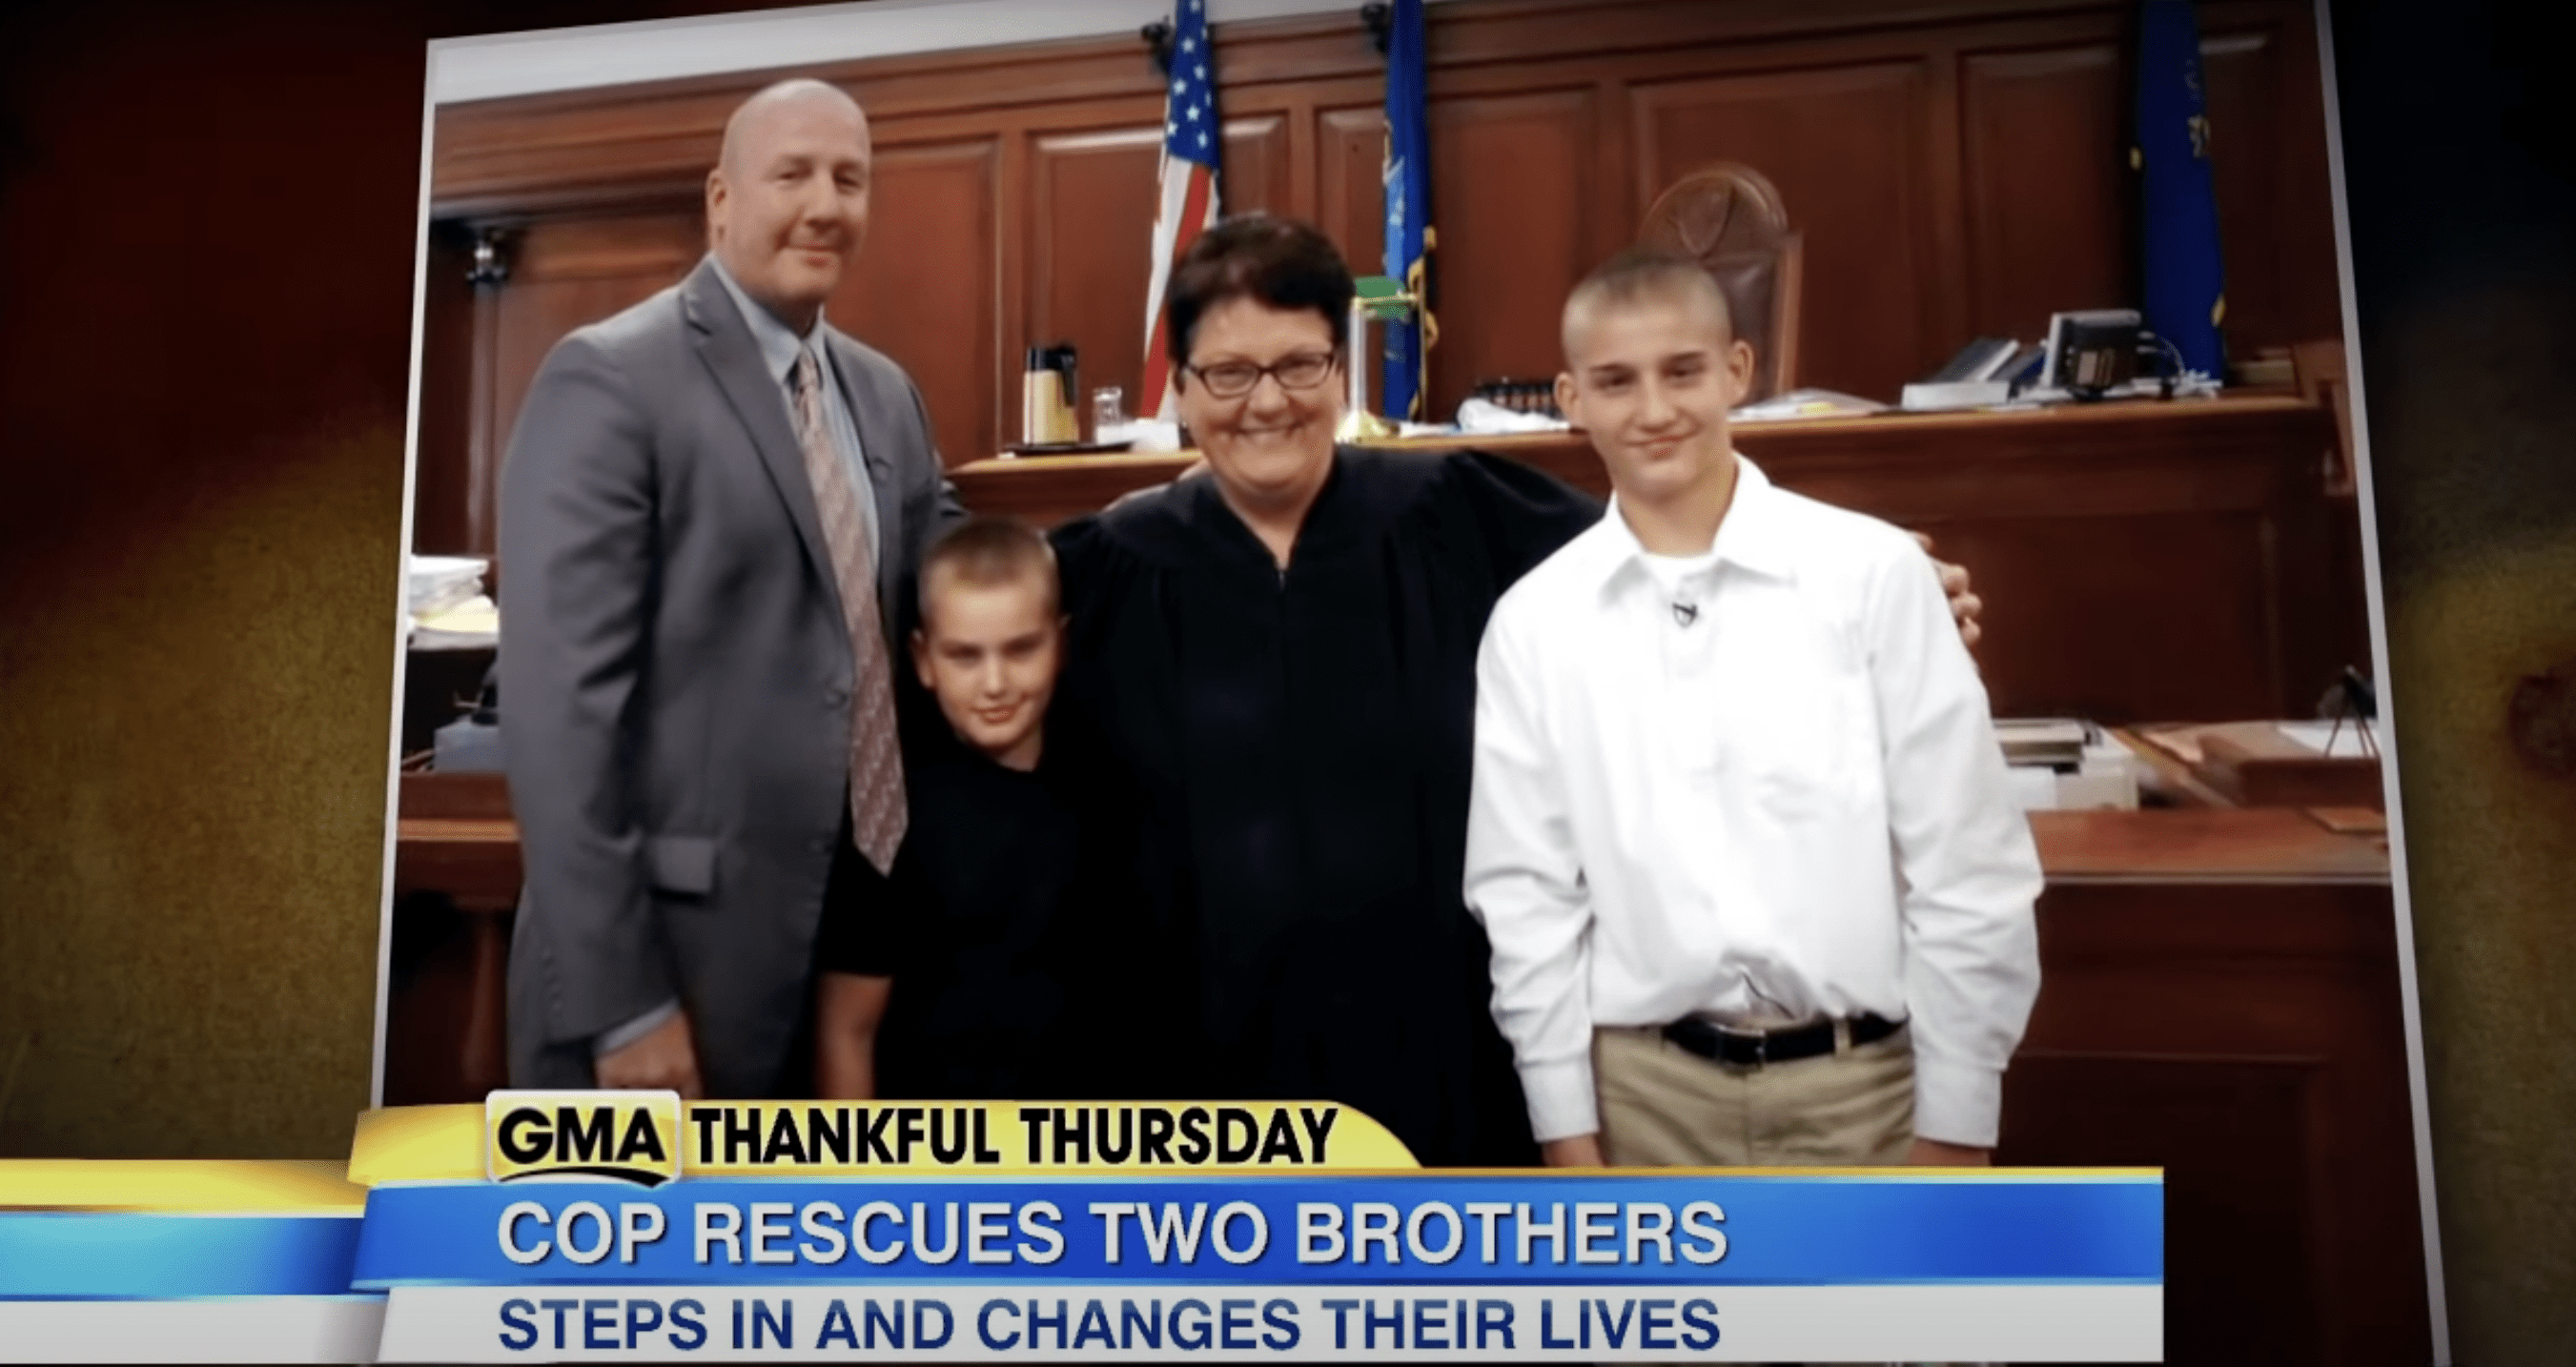 (Von links nach rechts) Jack Mook, Jessee, die Richterin und Josh bei der offiziellen Anhörung zur Adoption. | Quelle: Youtube.com/ABC News